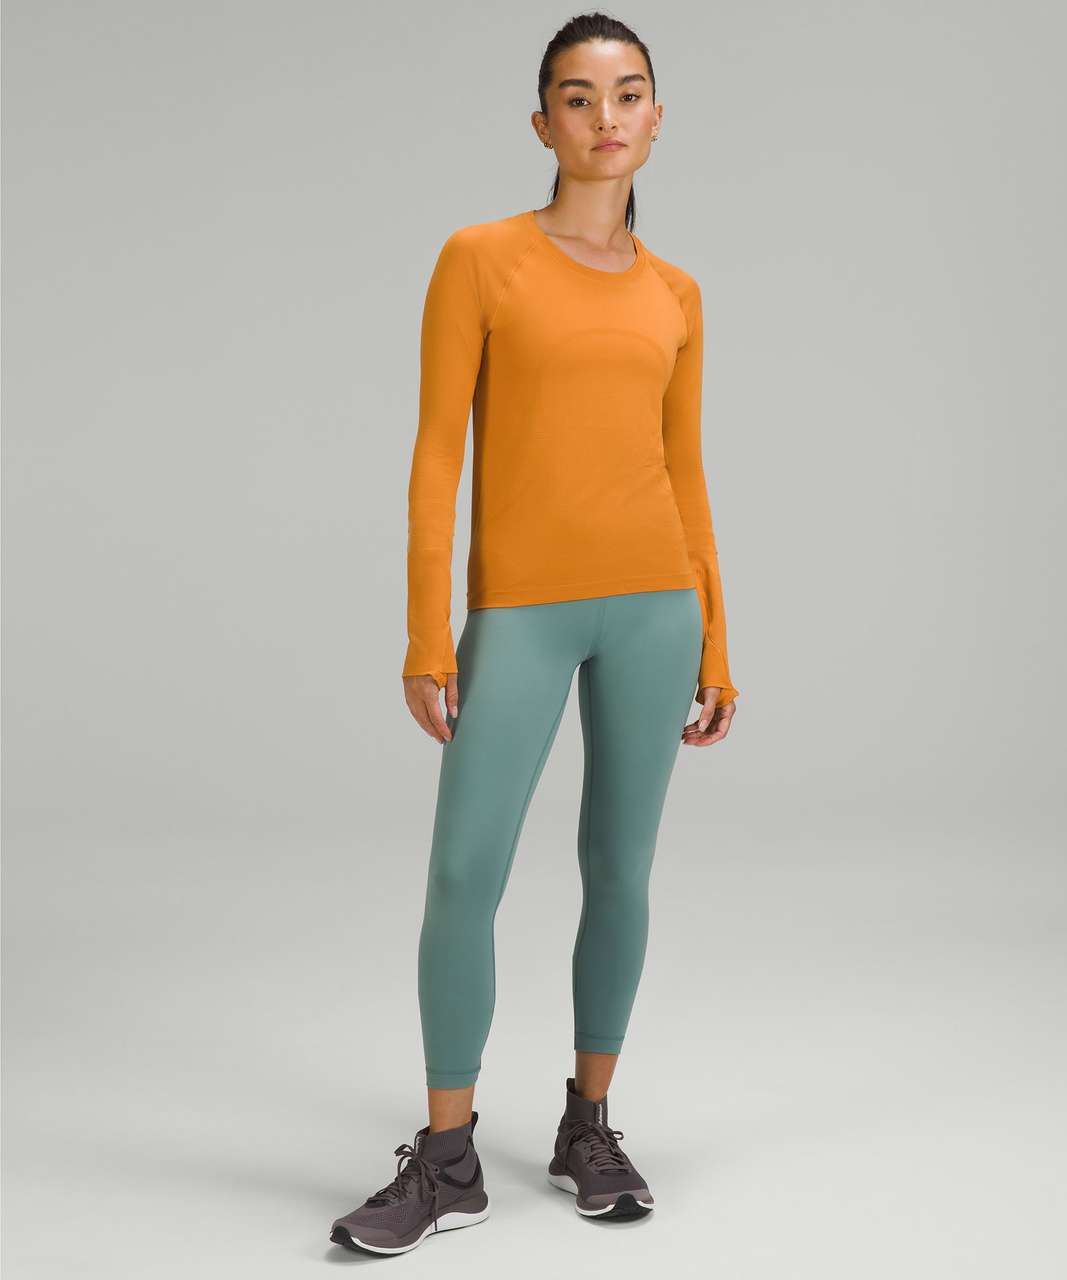 Lululemon Swiftly Tech Long Sleeve Shirt 2.0 *Race Length - Autumn Orange / Autumn Orange